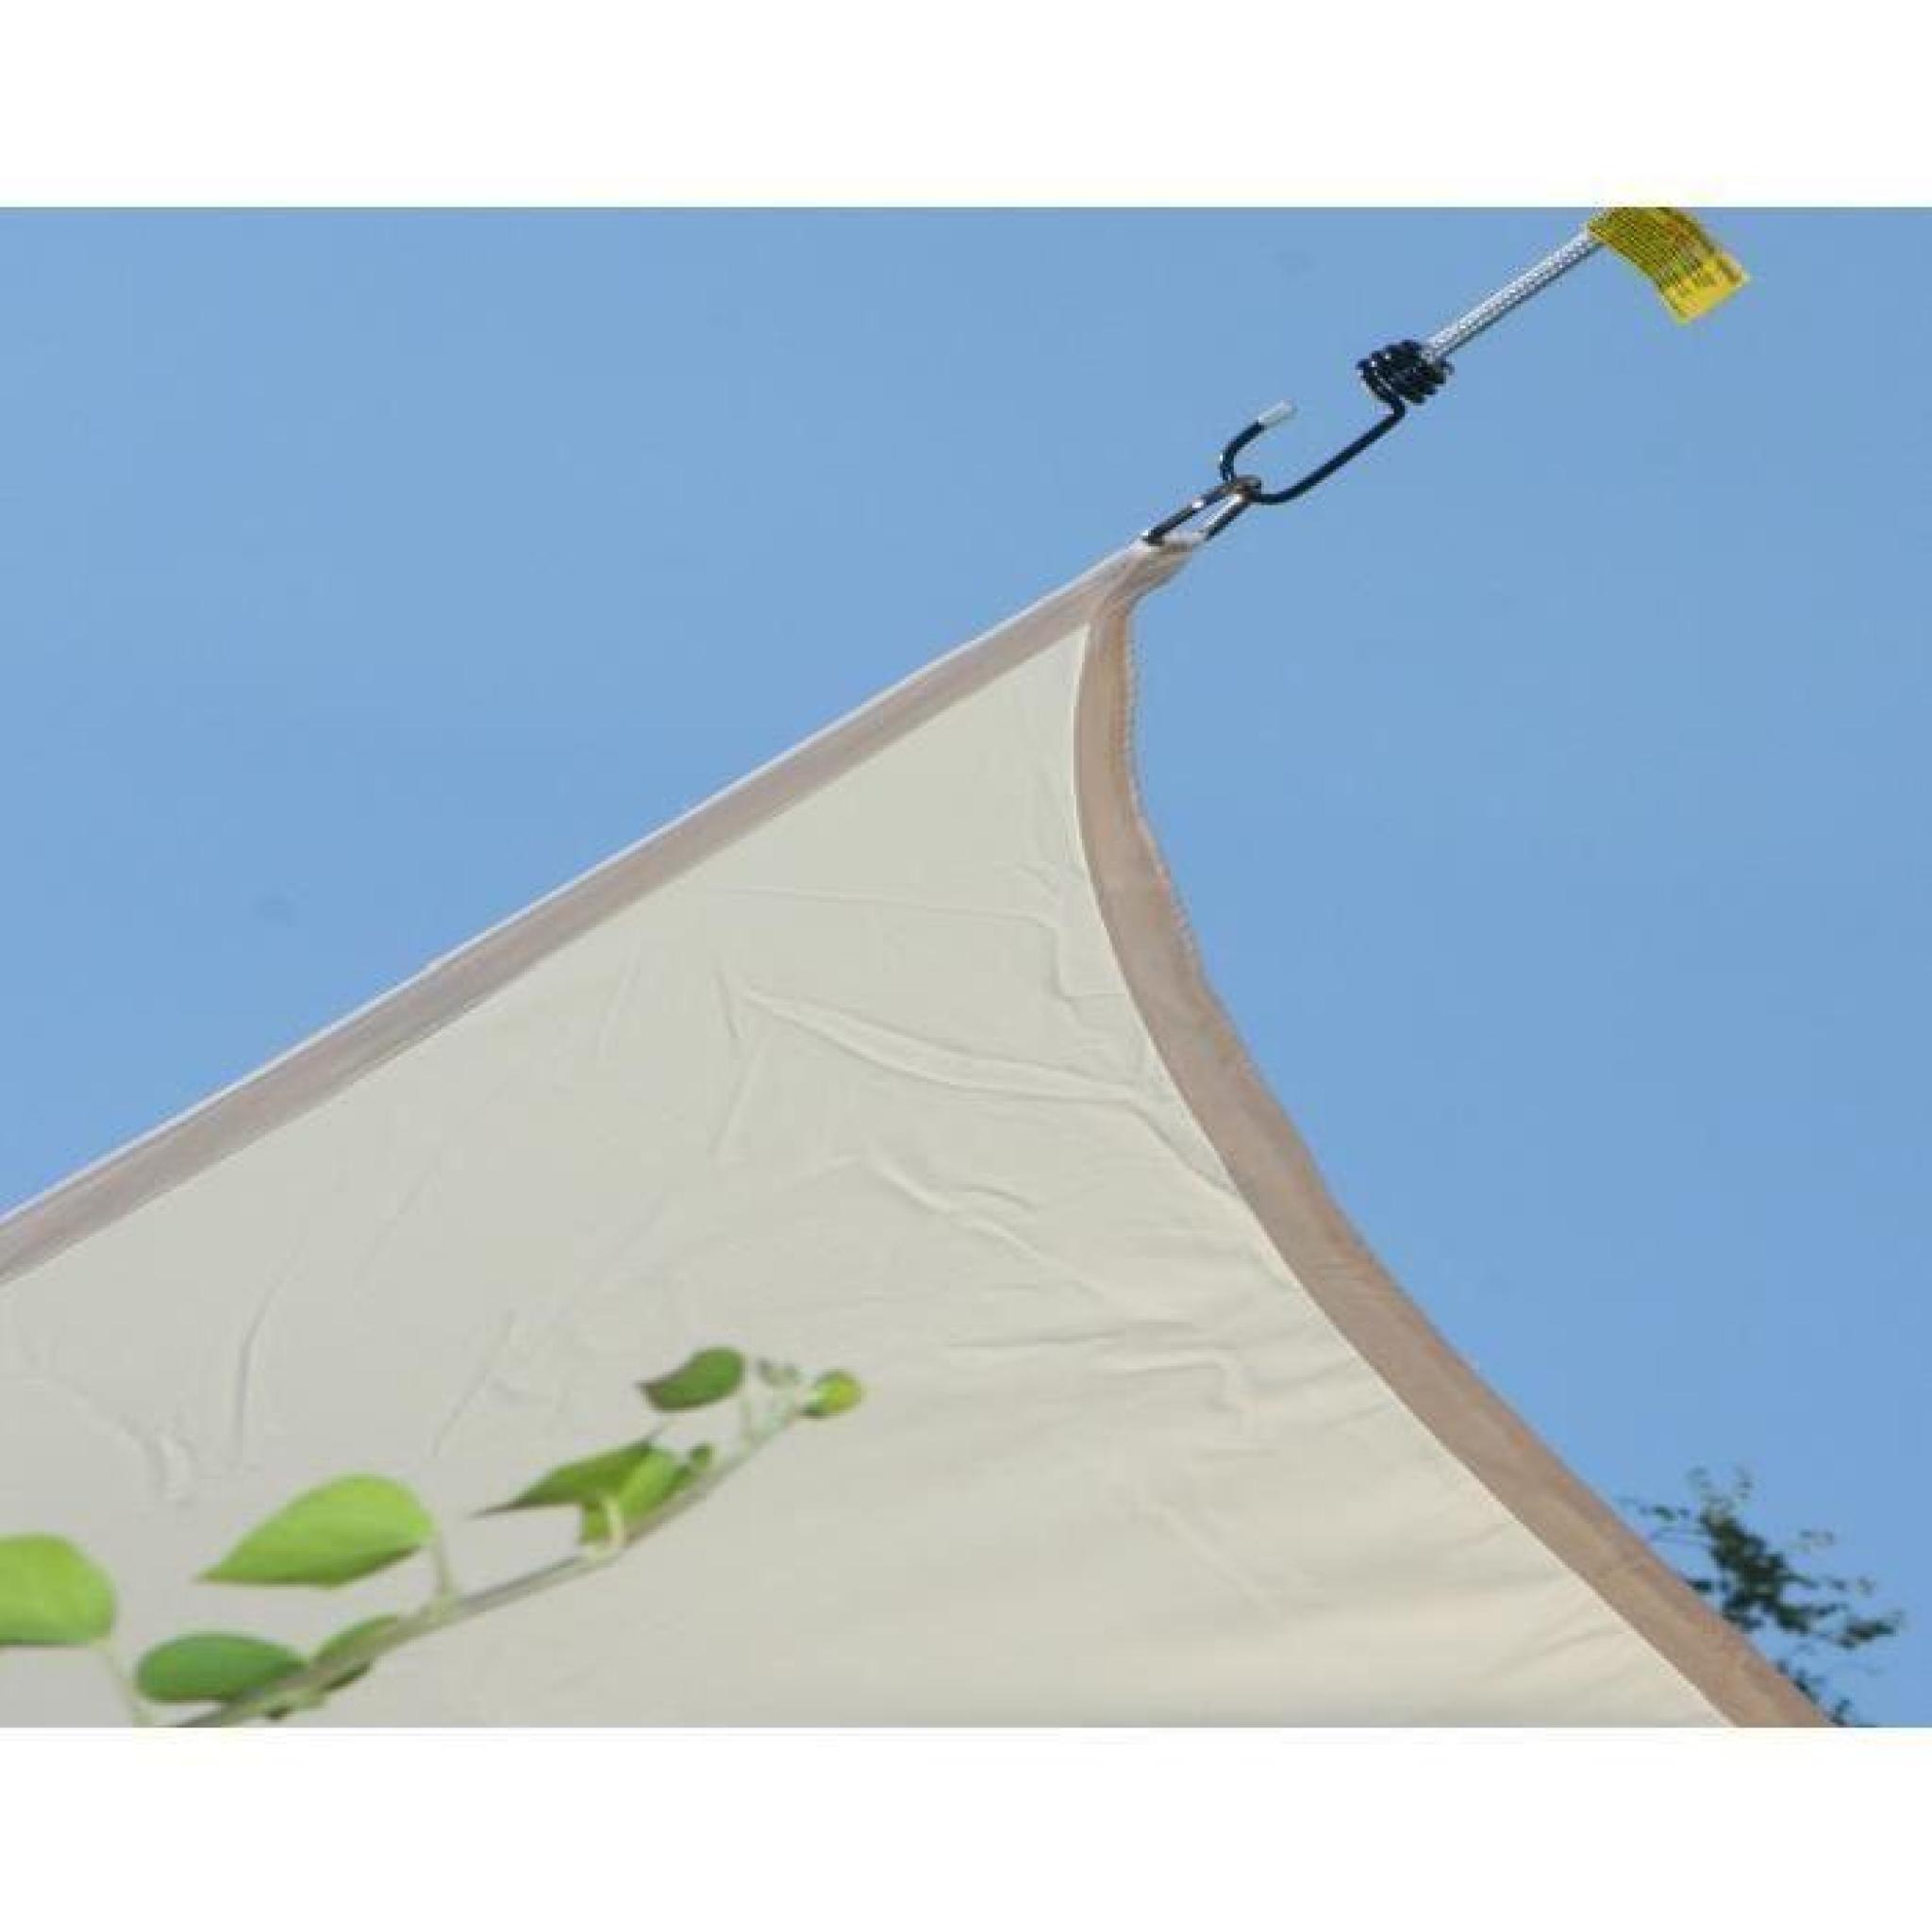 Voile d'ombrage rectangulaire Terracotta en Polyester 200g-m² anti-UV, 300 x 250 cm avec kit de fixation pas cher